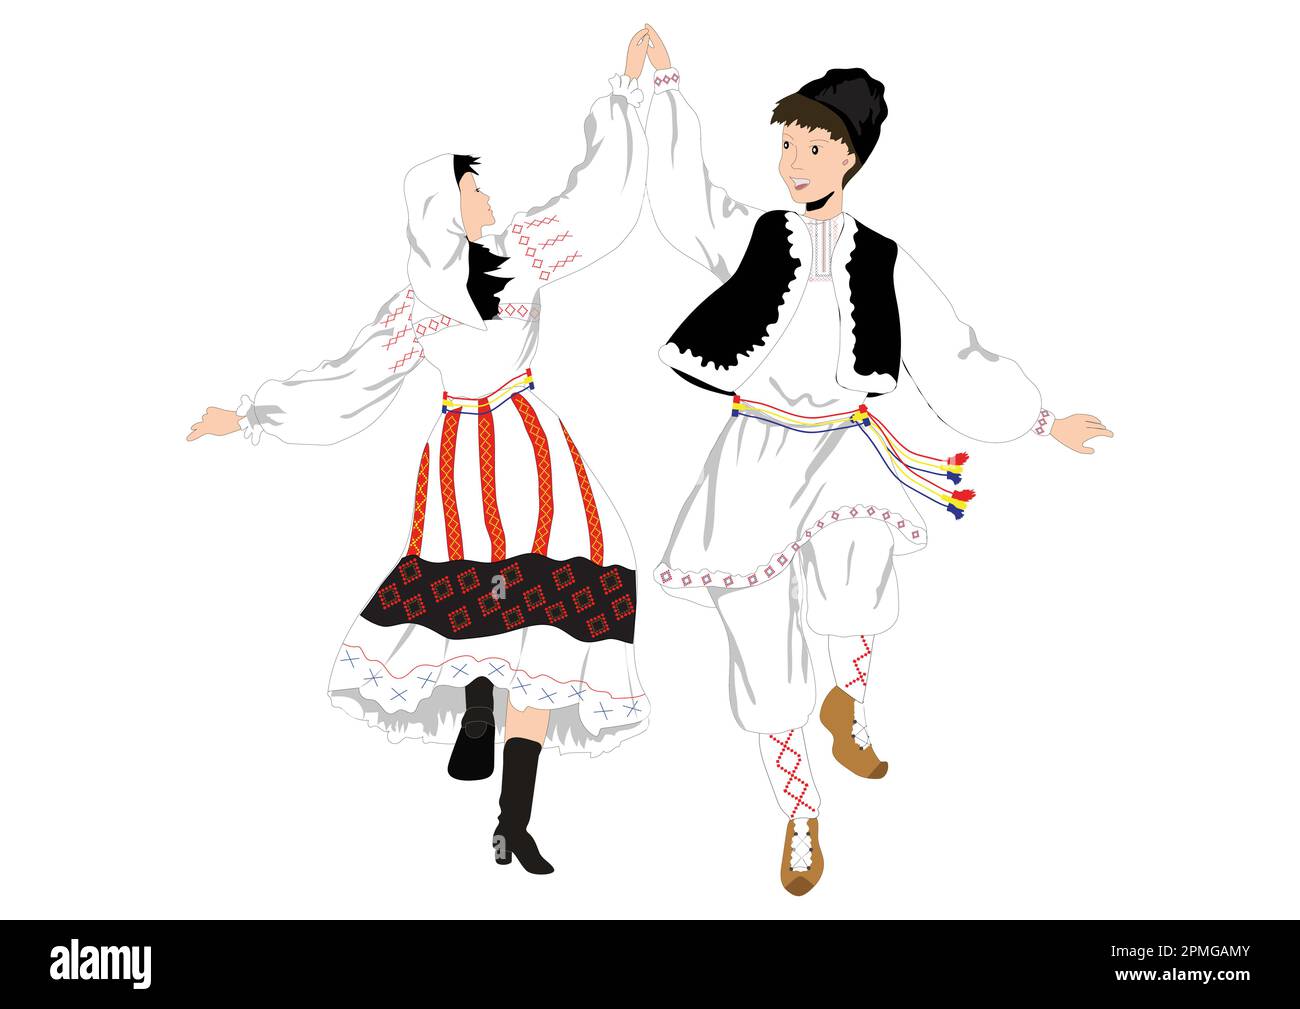 Un homme et une femme dansent des danses traditionnelles. Danse populaire, danse traditionnelle Illustration de Vecteur